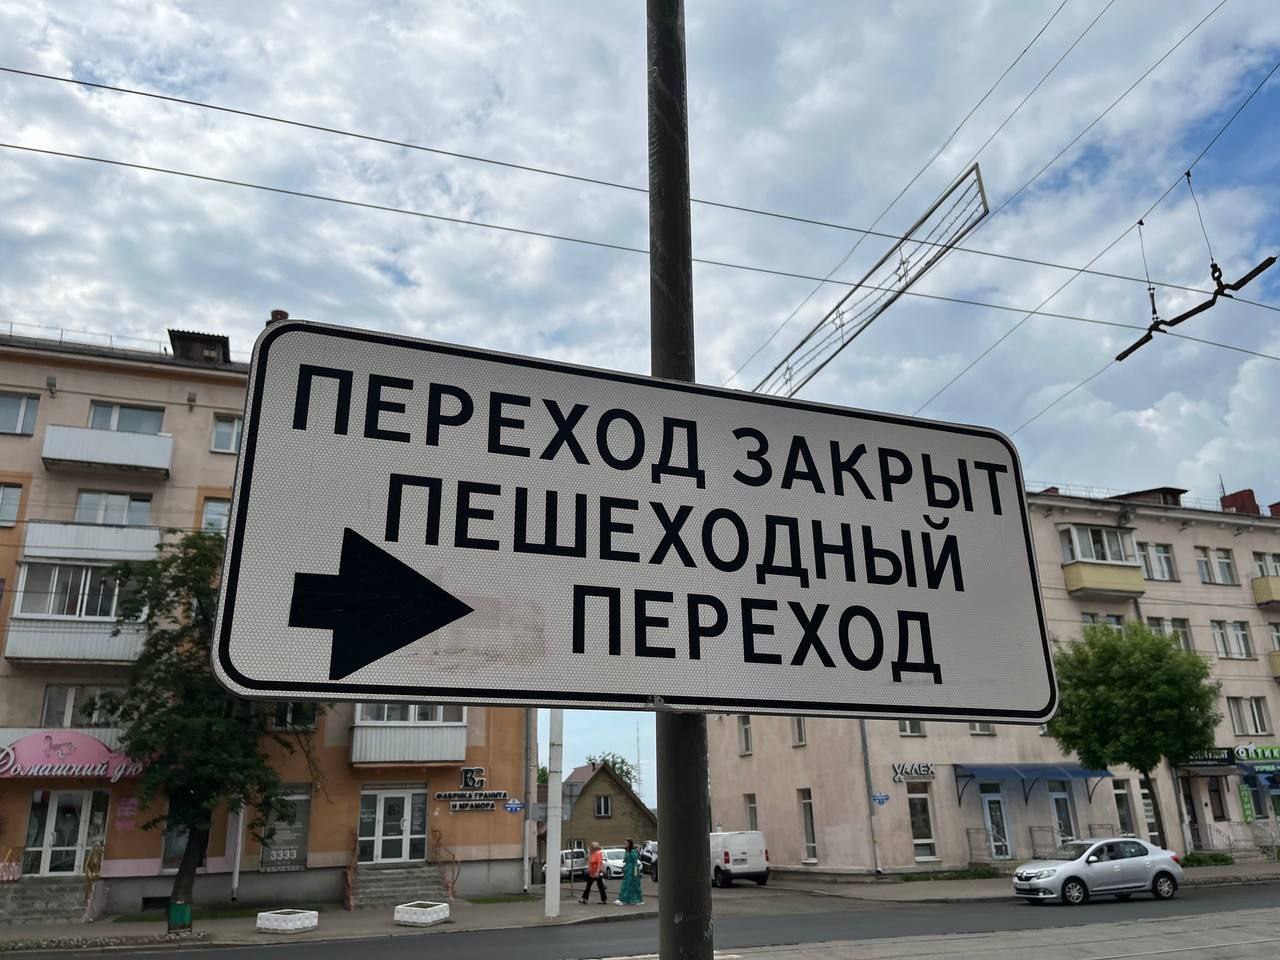 Убрали один из переходов на проспекте Черняховского в Витебске